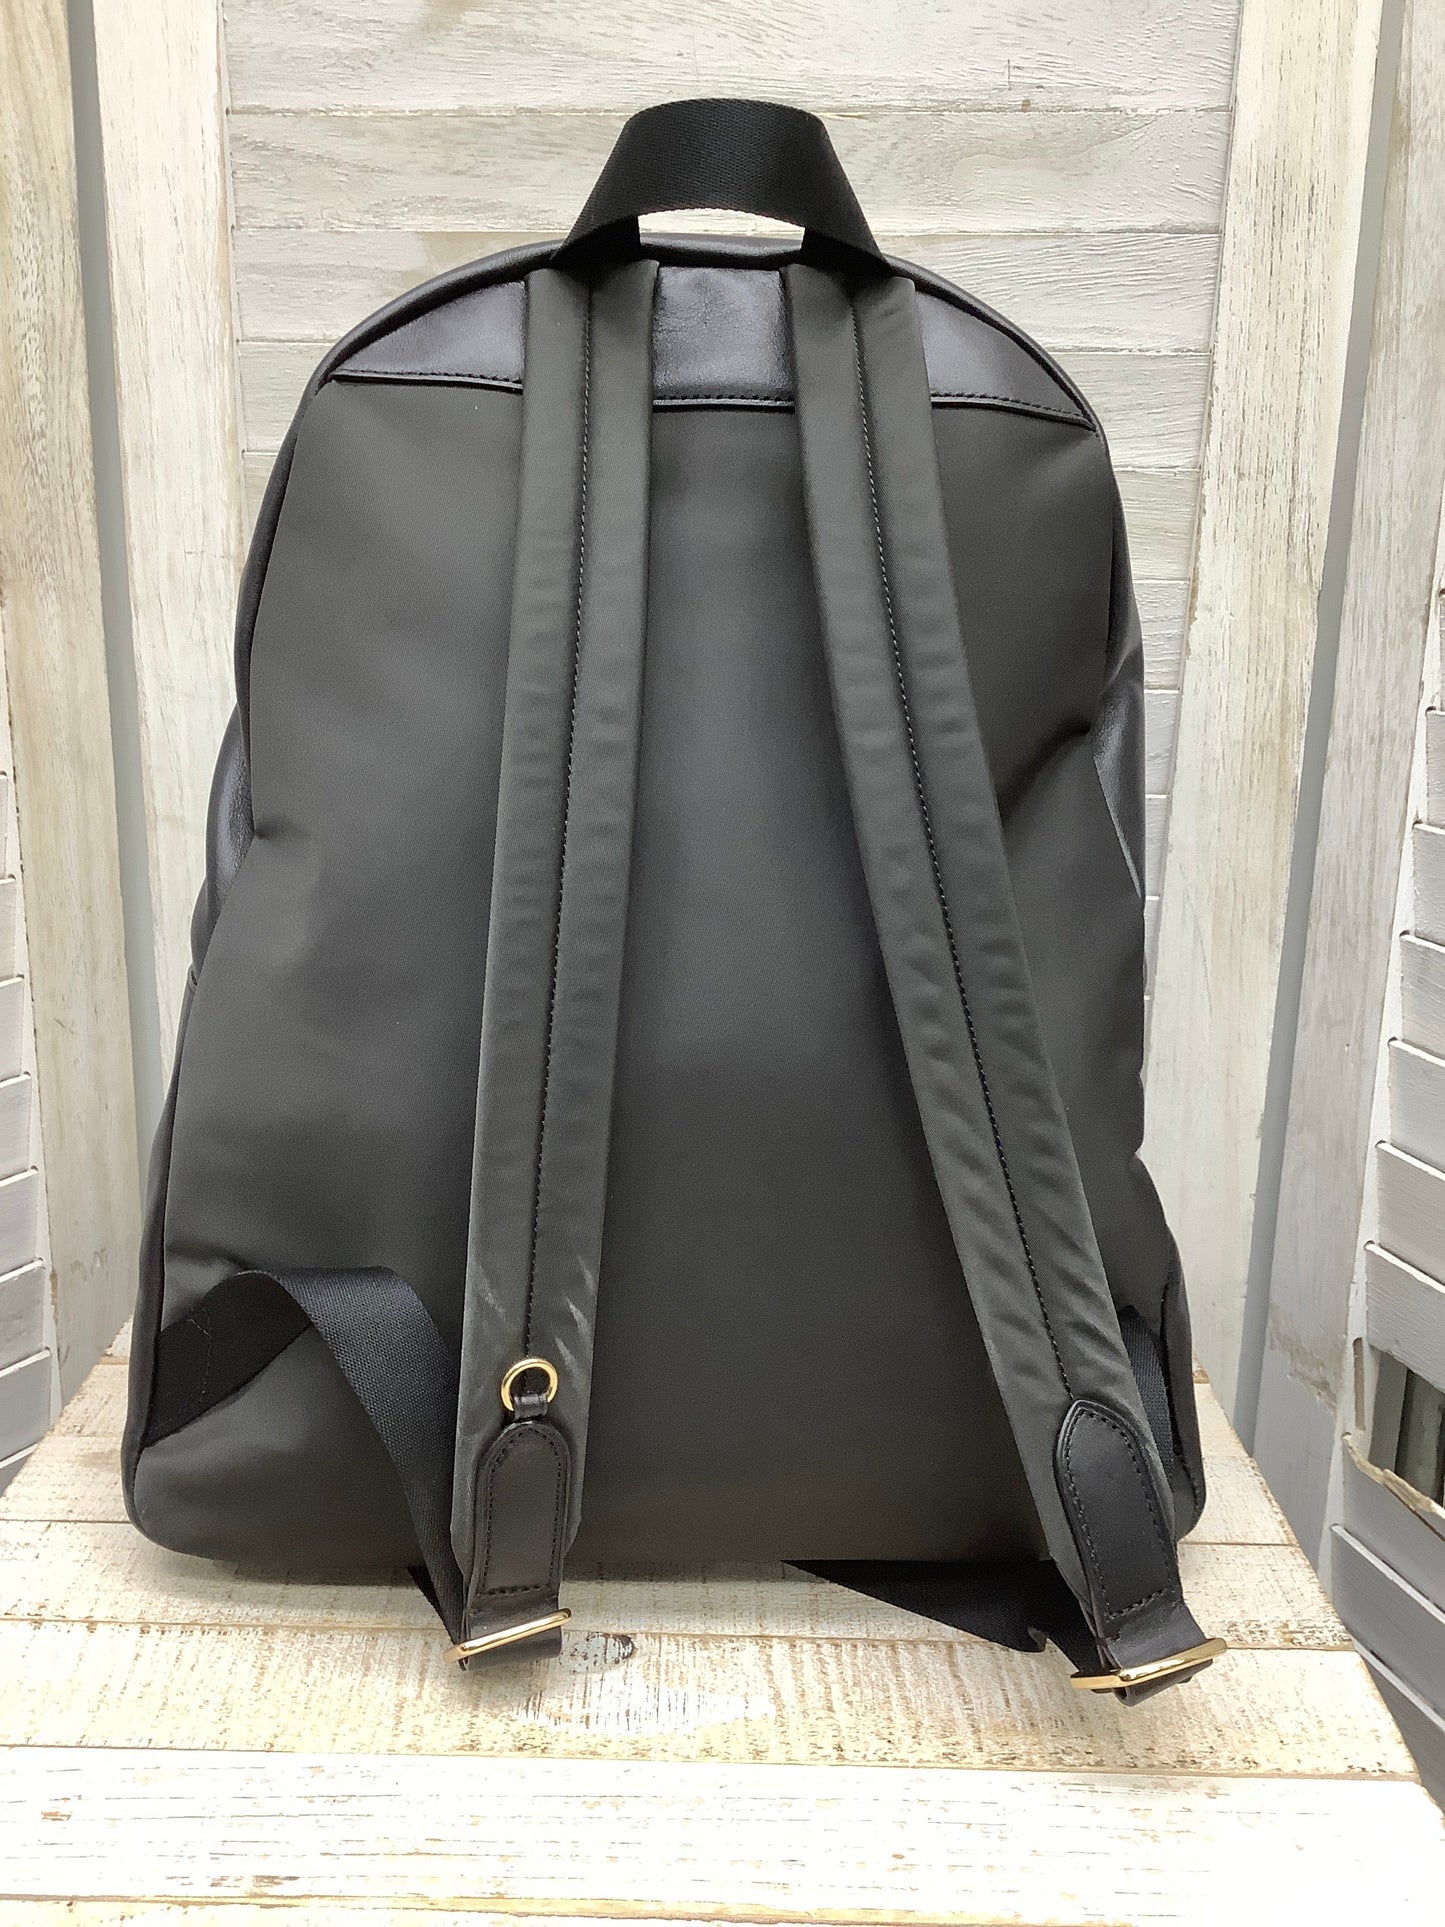 Backpack Designer Coach, Size Large